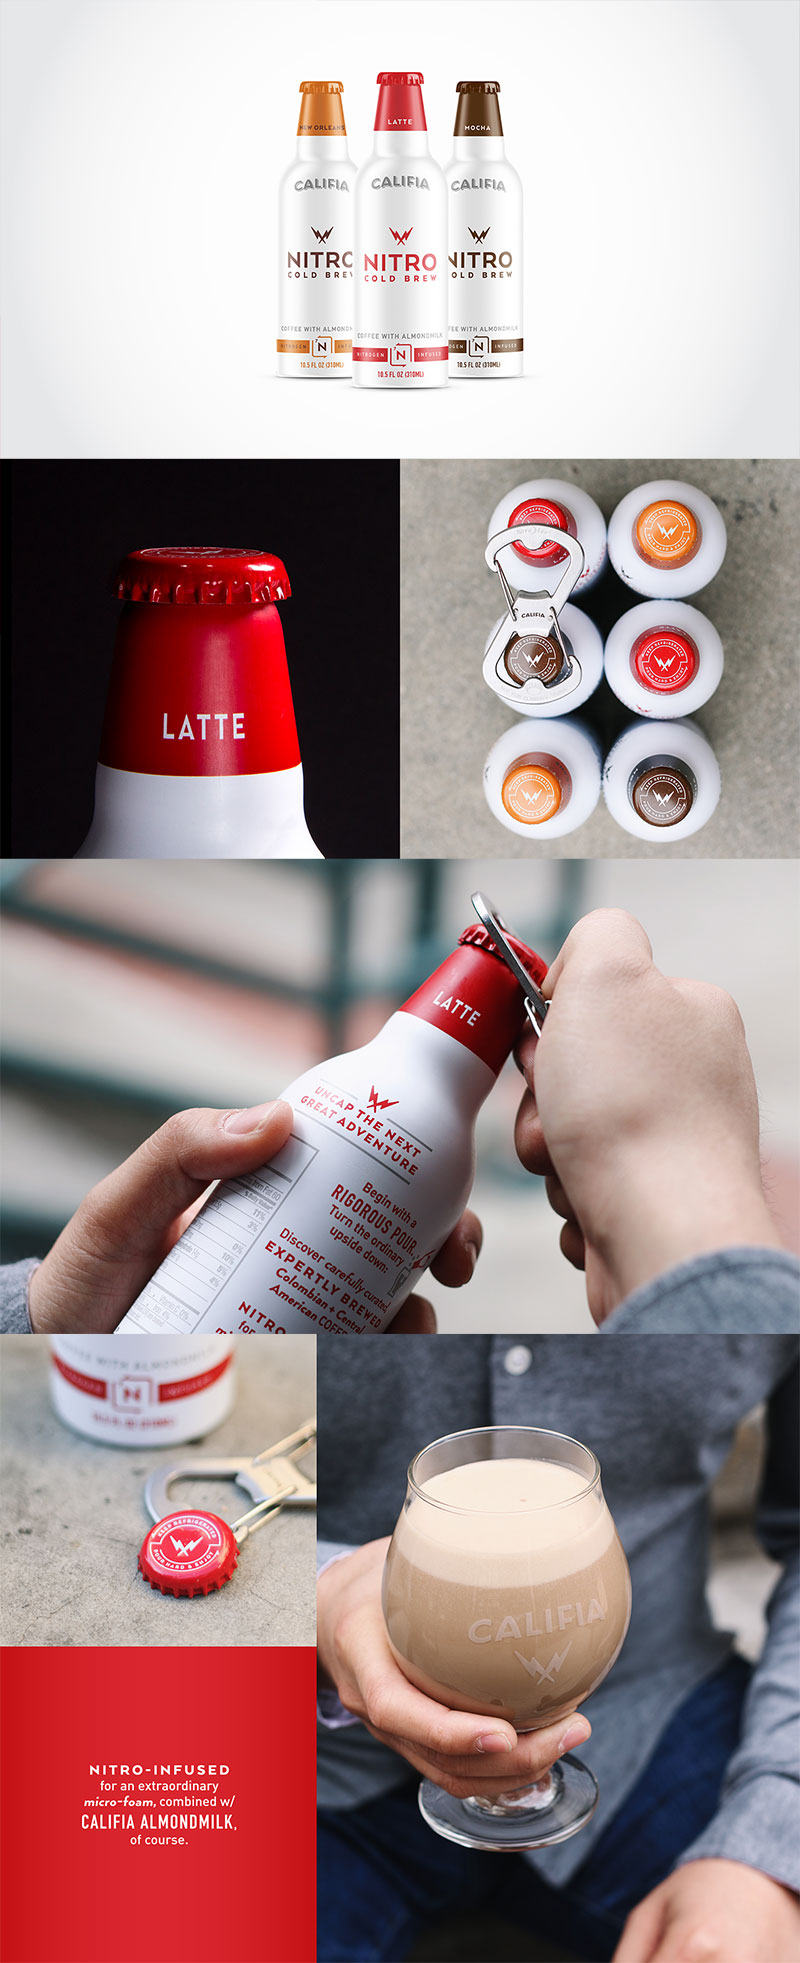 60款创意咖啡品牌和包装设计